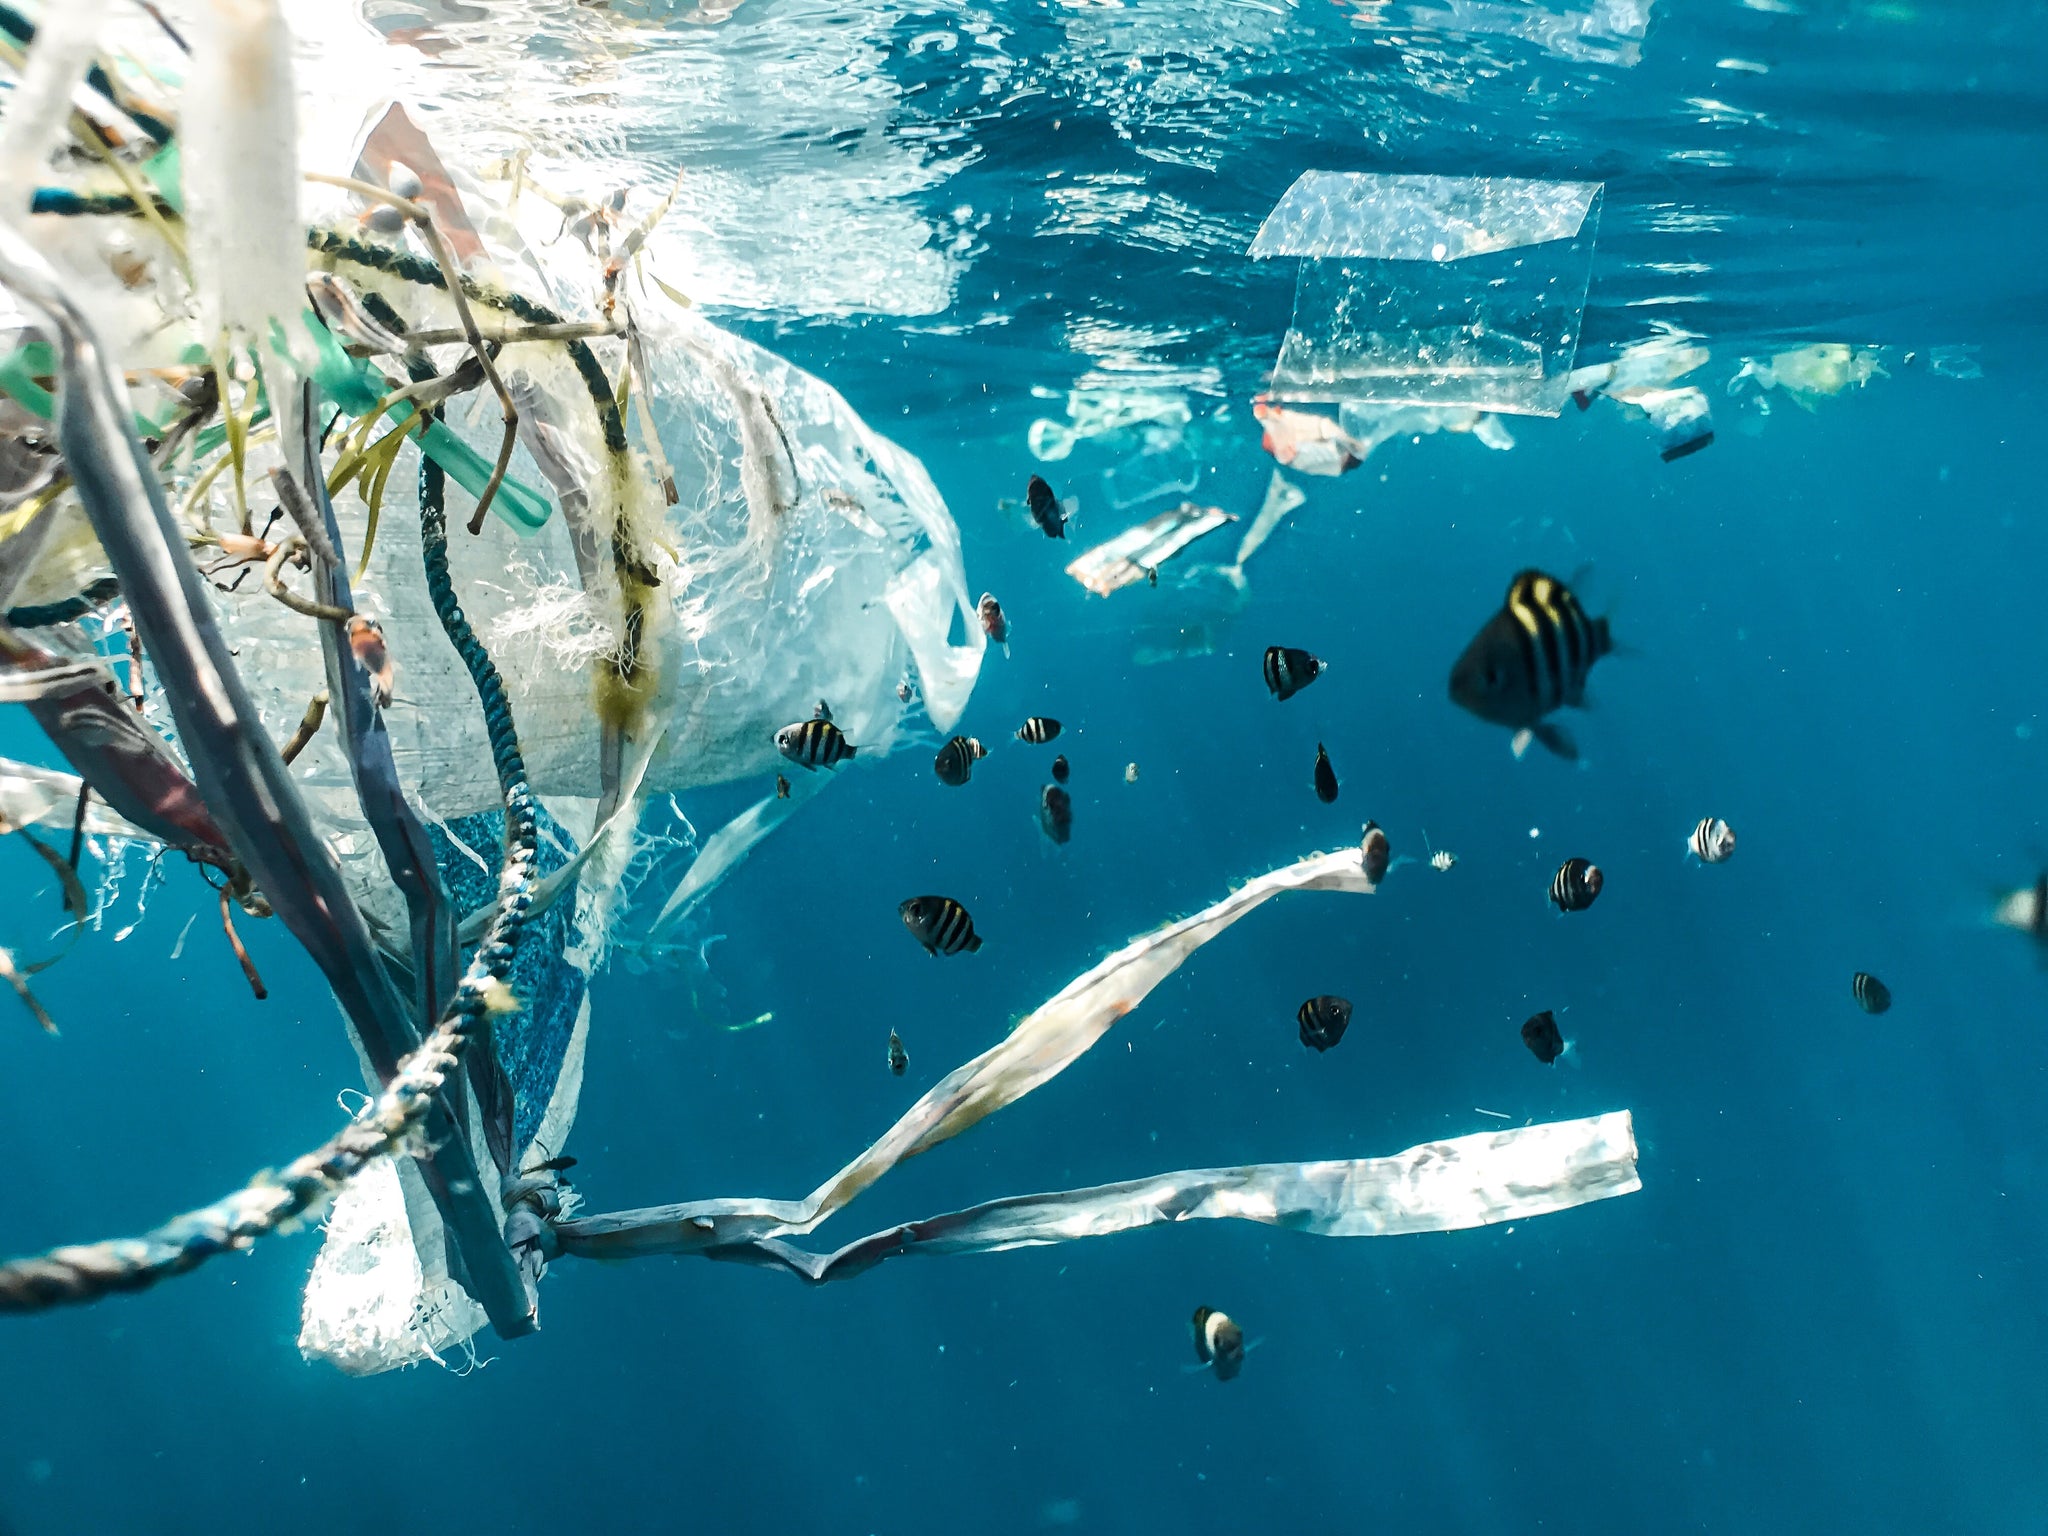 7 types of plastic & their alternatives: Garbage floating in Ocean